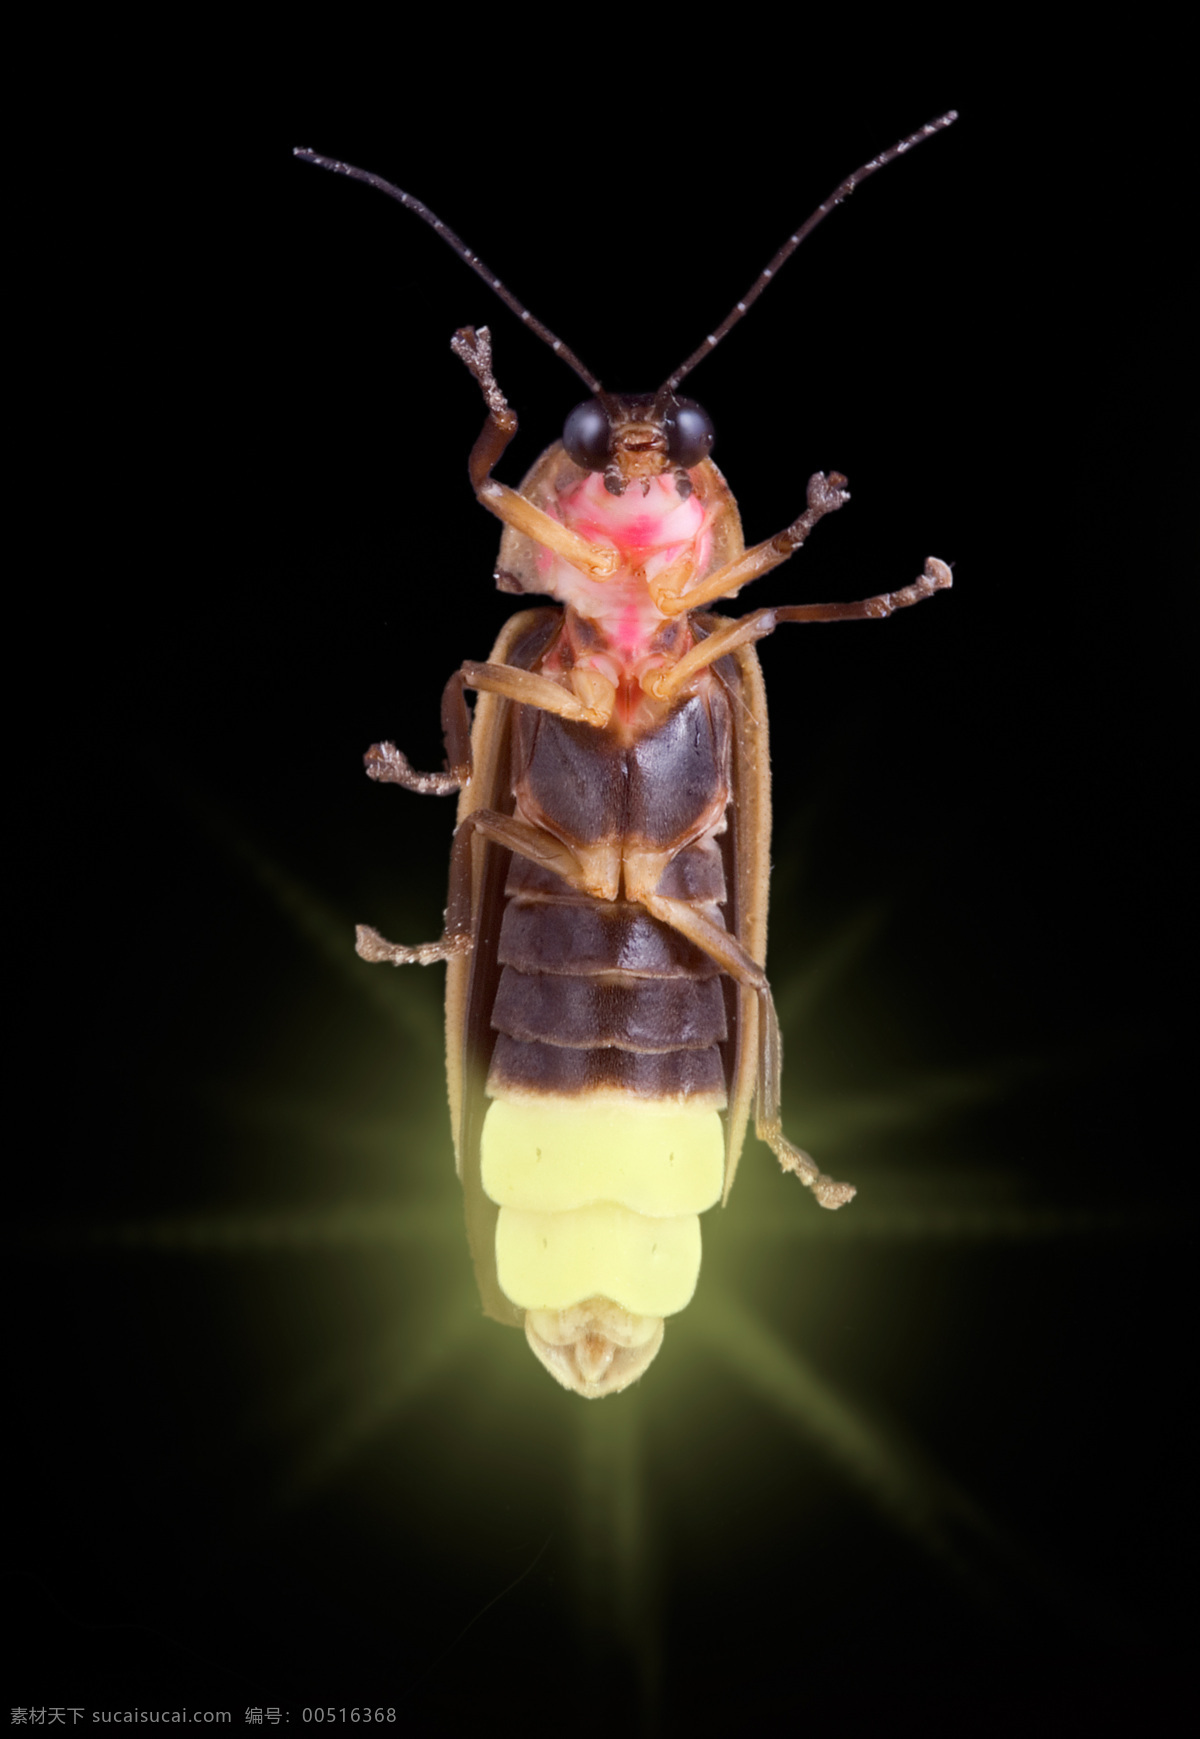 昆虫 大自然 动物 设计素材 生物世界 科技